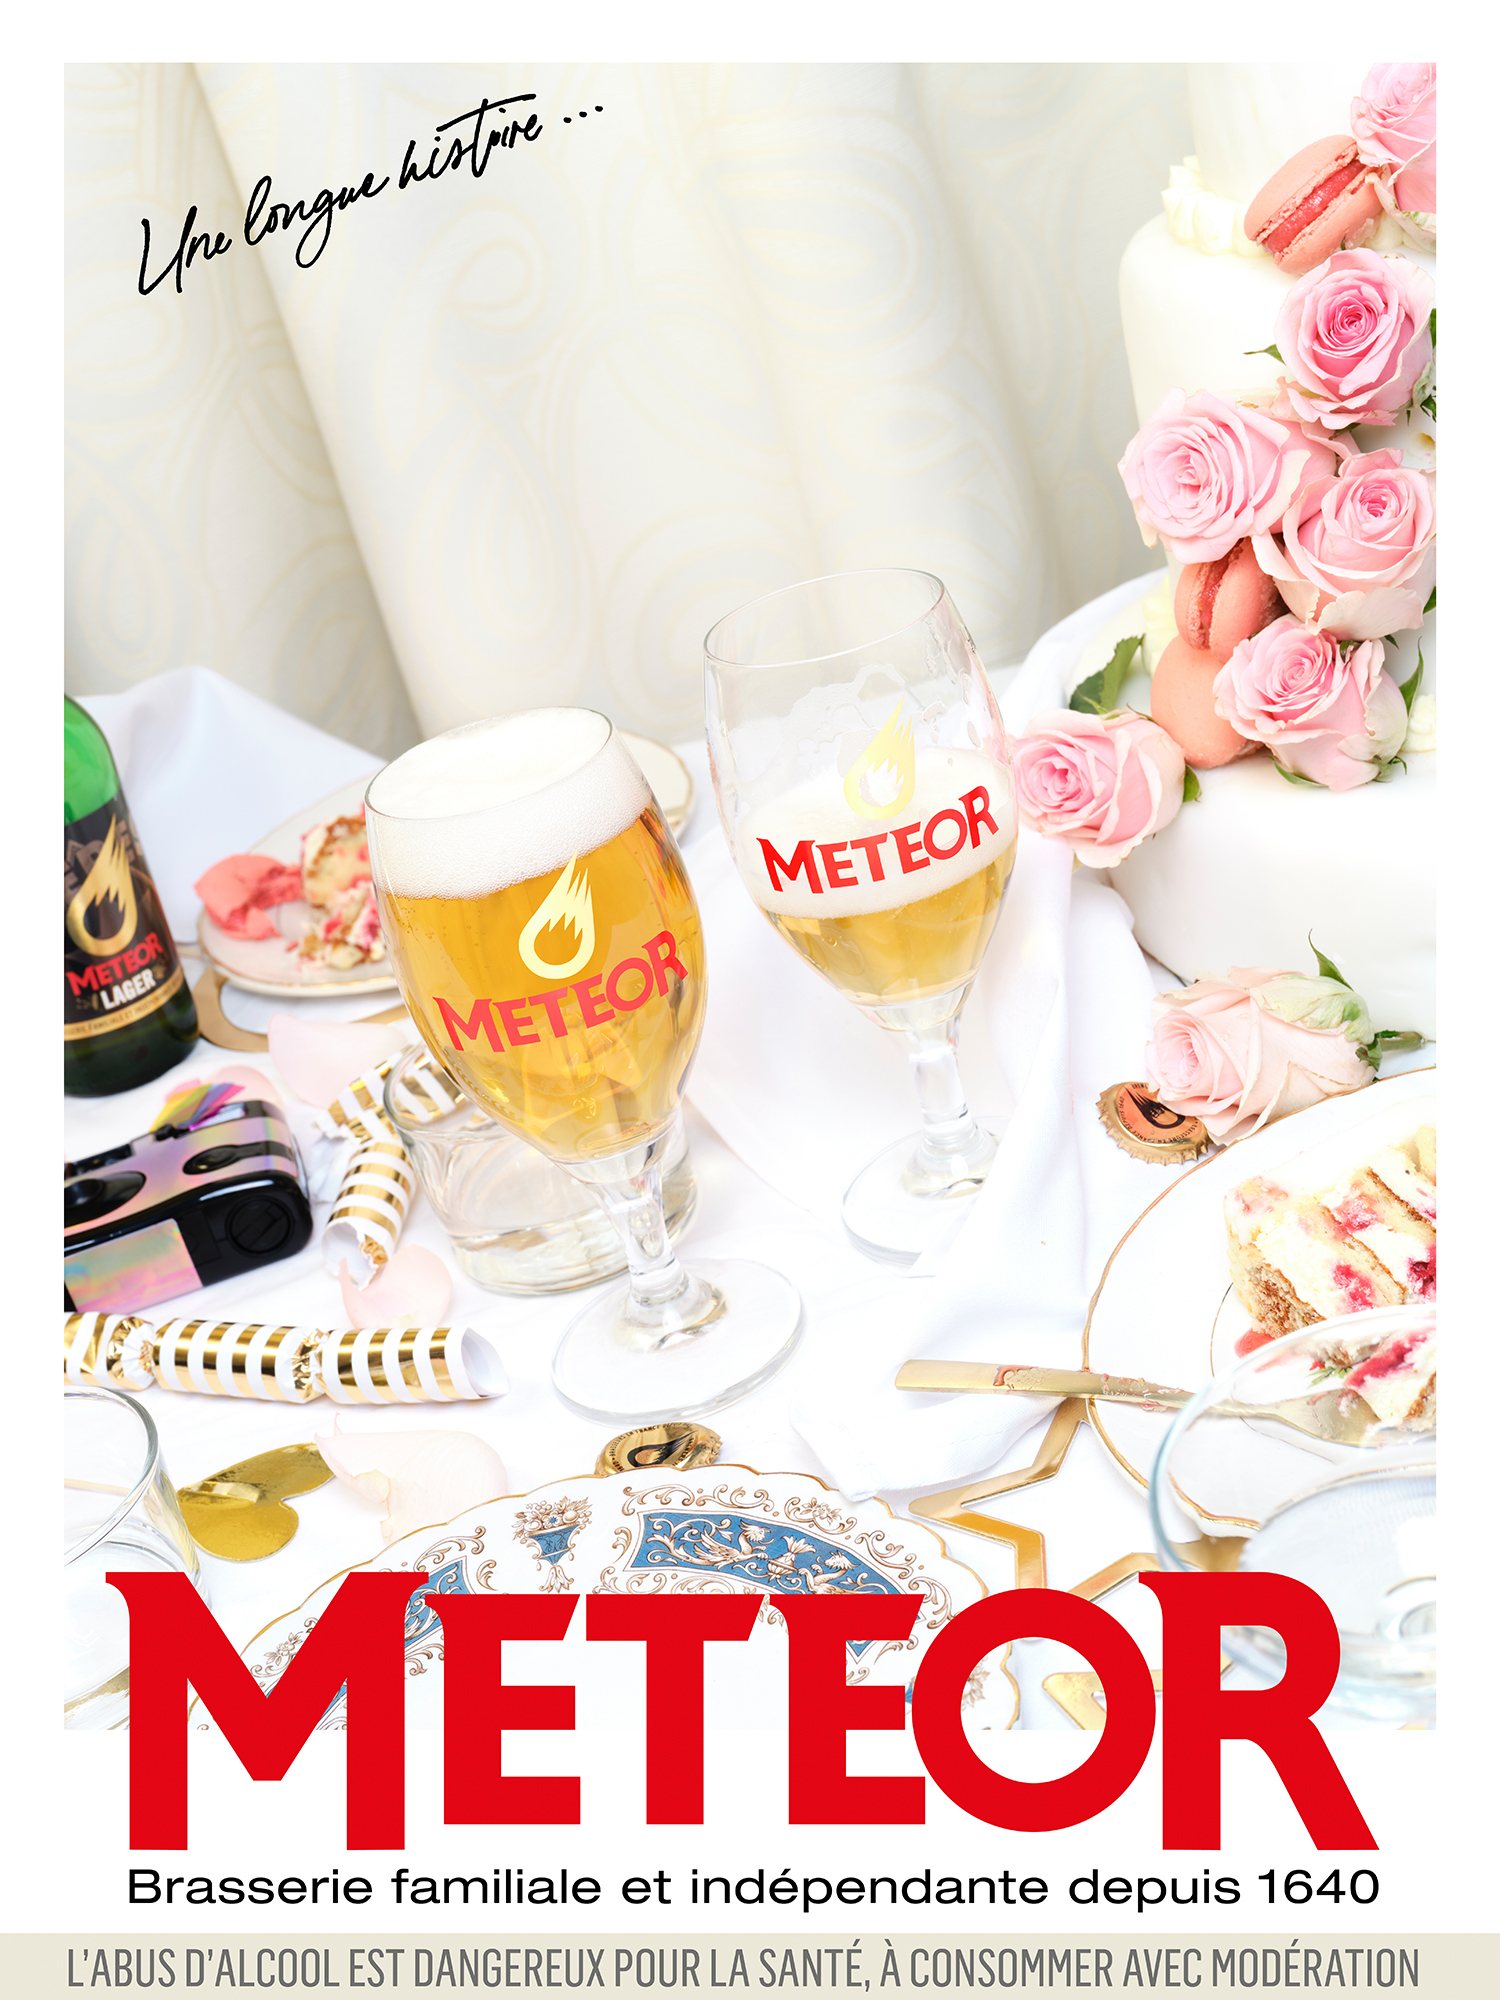 2ème image de la campagne Meteor